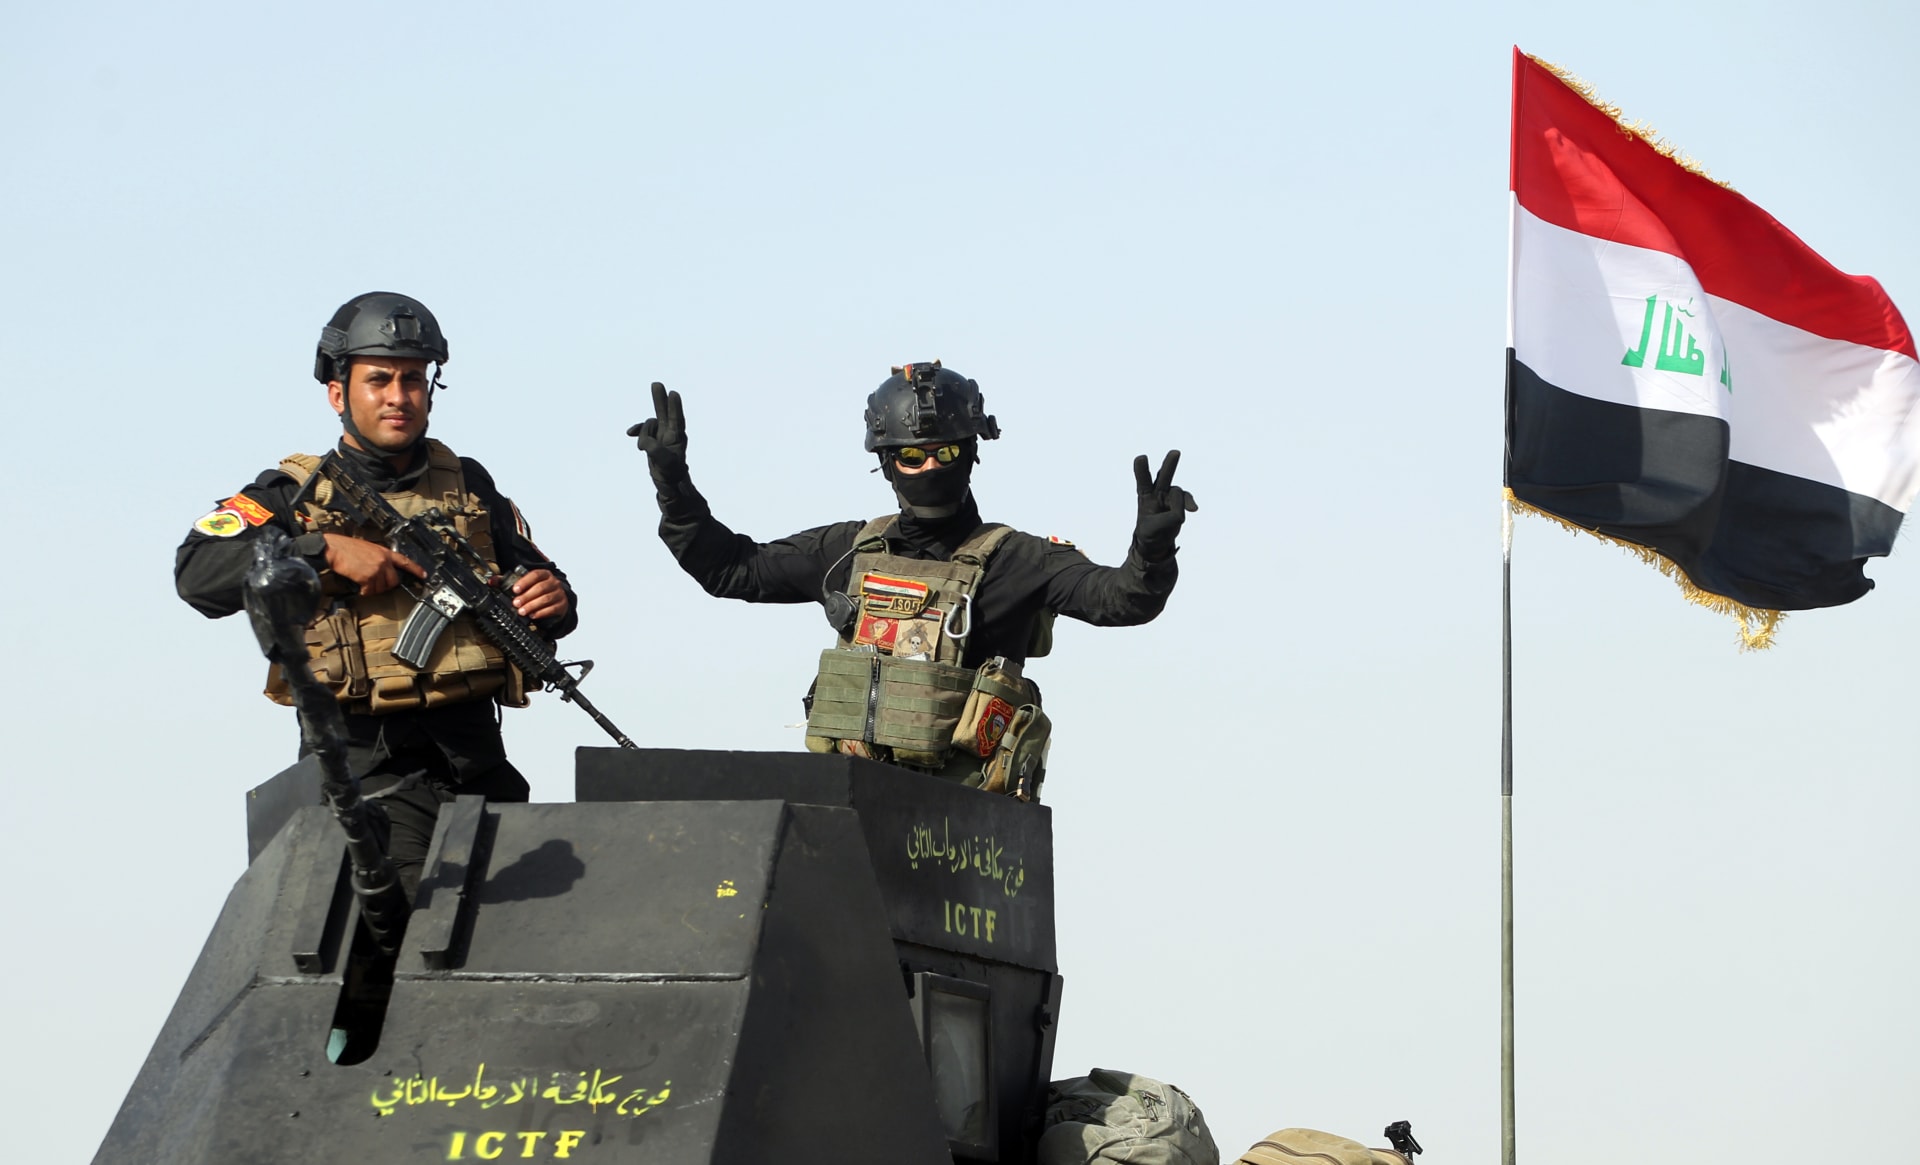 القوات العراقية تشن عملية اقتحام معقل "داعش" بالفلوجة.. والتنظيم يرد بزيادة الهجمات على المدنيين في المدن العراقية والسورية